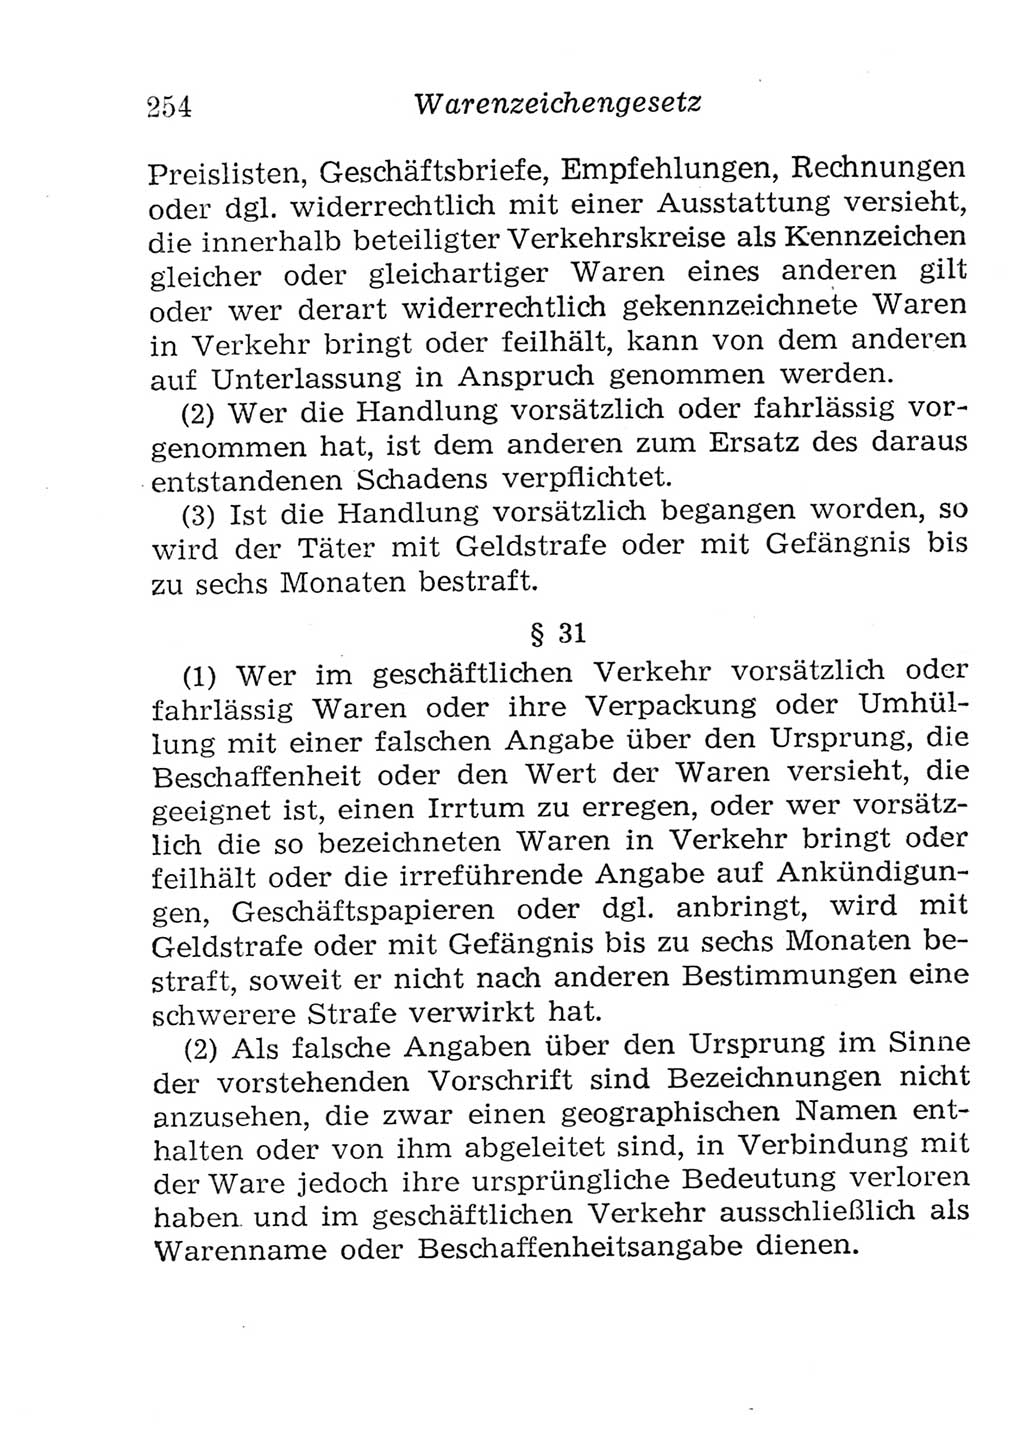 Strafgesetzbuch (StGB) und andere Strafgesetze [Deutsche Demokratische Republik (DDR)] 1957, Seite 254 (StGB Strafges. DDR 1957, S. 254)